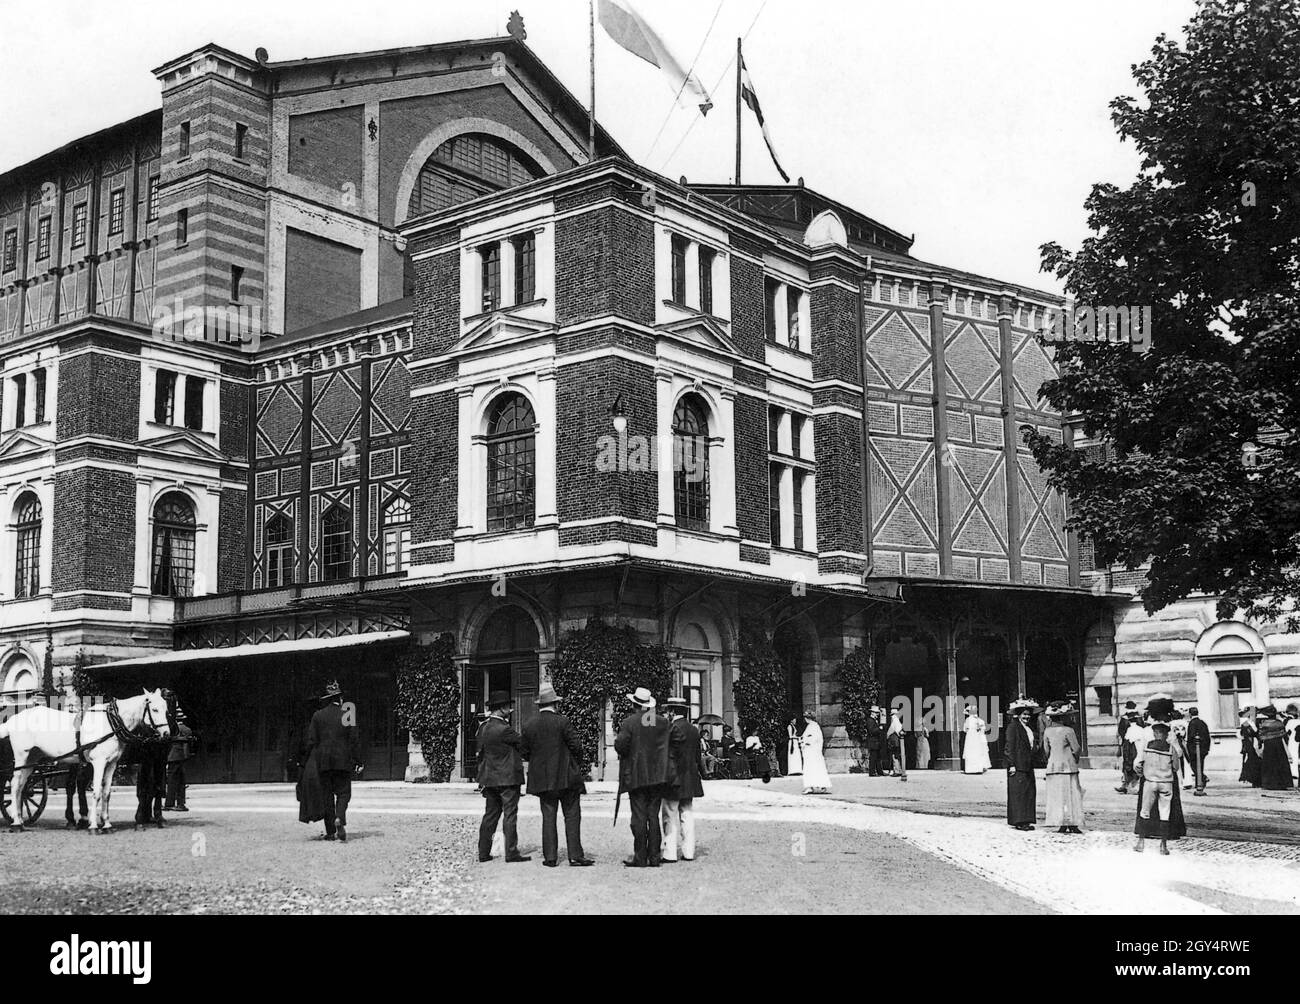 Cette photo montre le Richard Wagner Festival Theatre à Bayreuth en 1912, avec la haute société se rassemblant à l'ouest de l'entrée principale, vraisemblablement pour un spectacle d'opéra au Bayreuth Festival.[traduction automatique] Banque D'Images